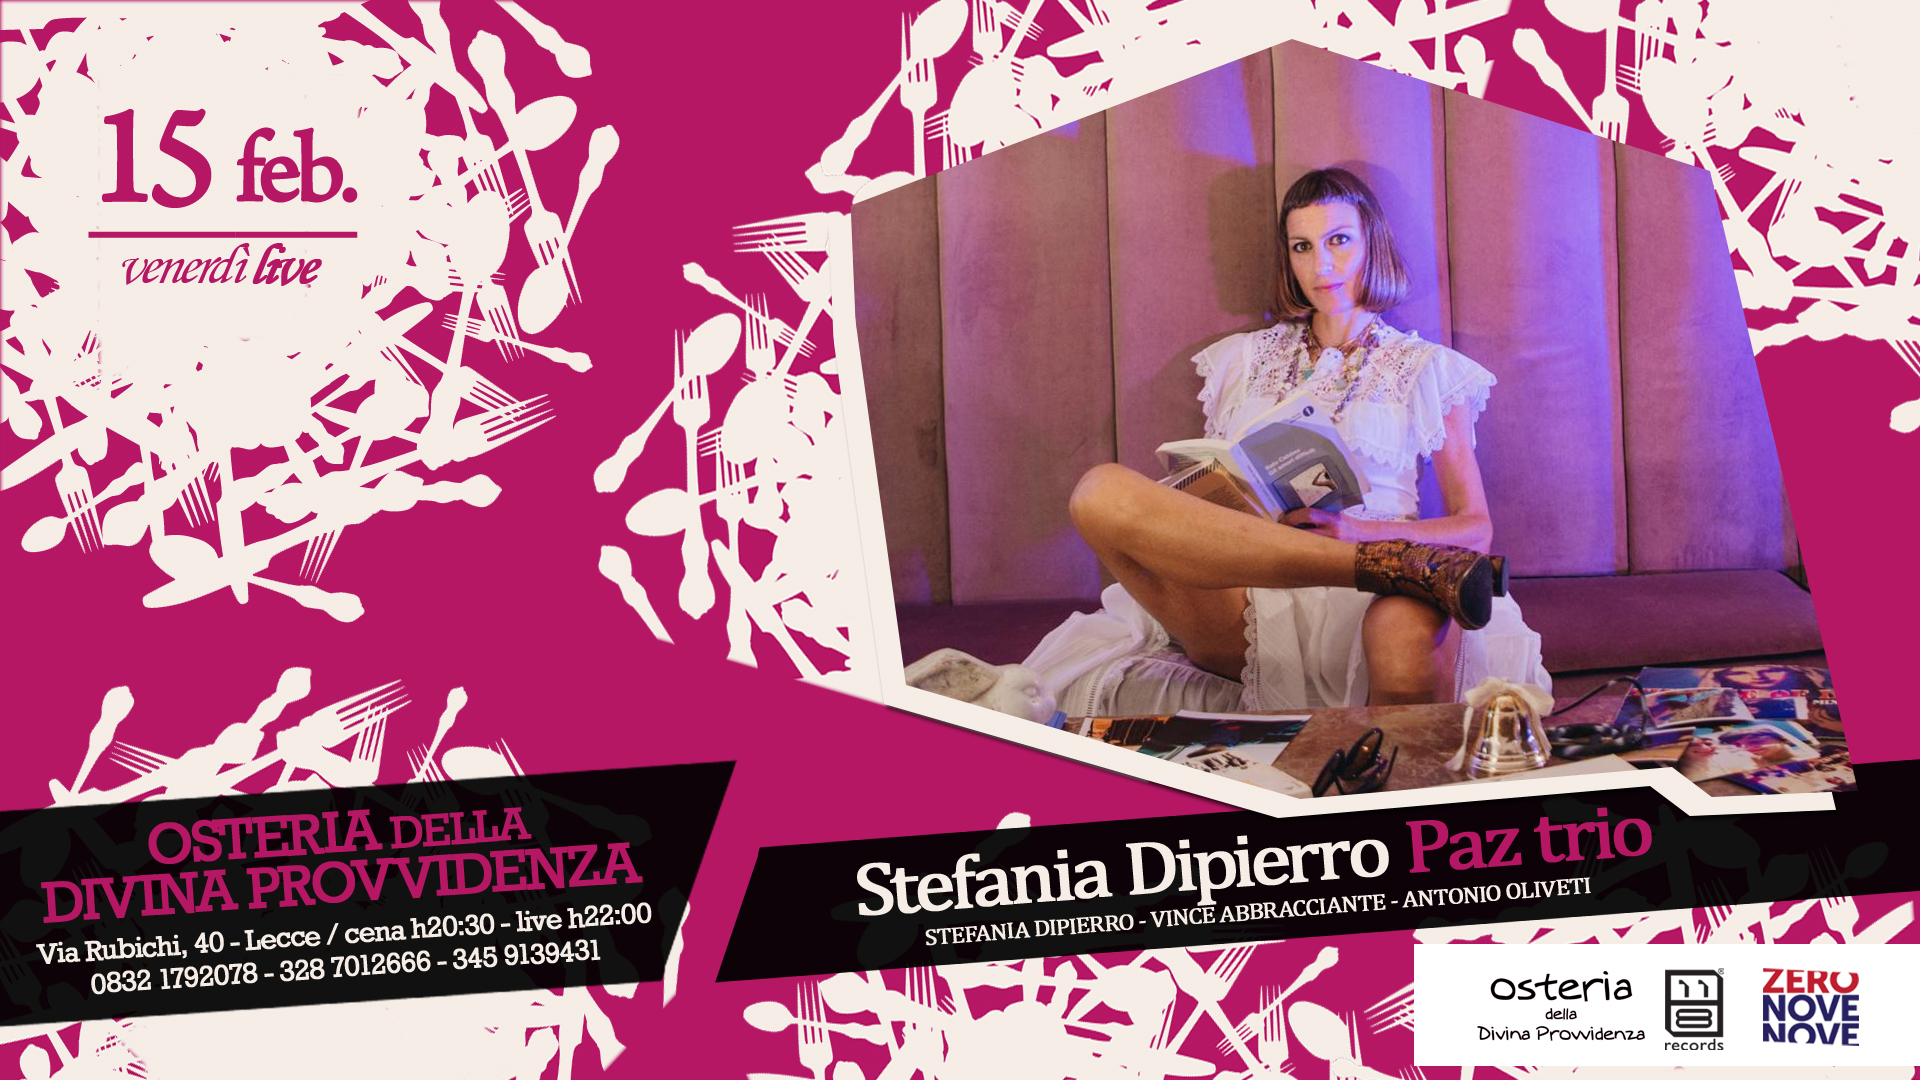 Il “Venerdì LIVE” dell' “Osteria della divina provvidenza” con Stefania Dipierro Paz trio